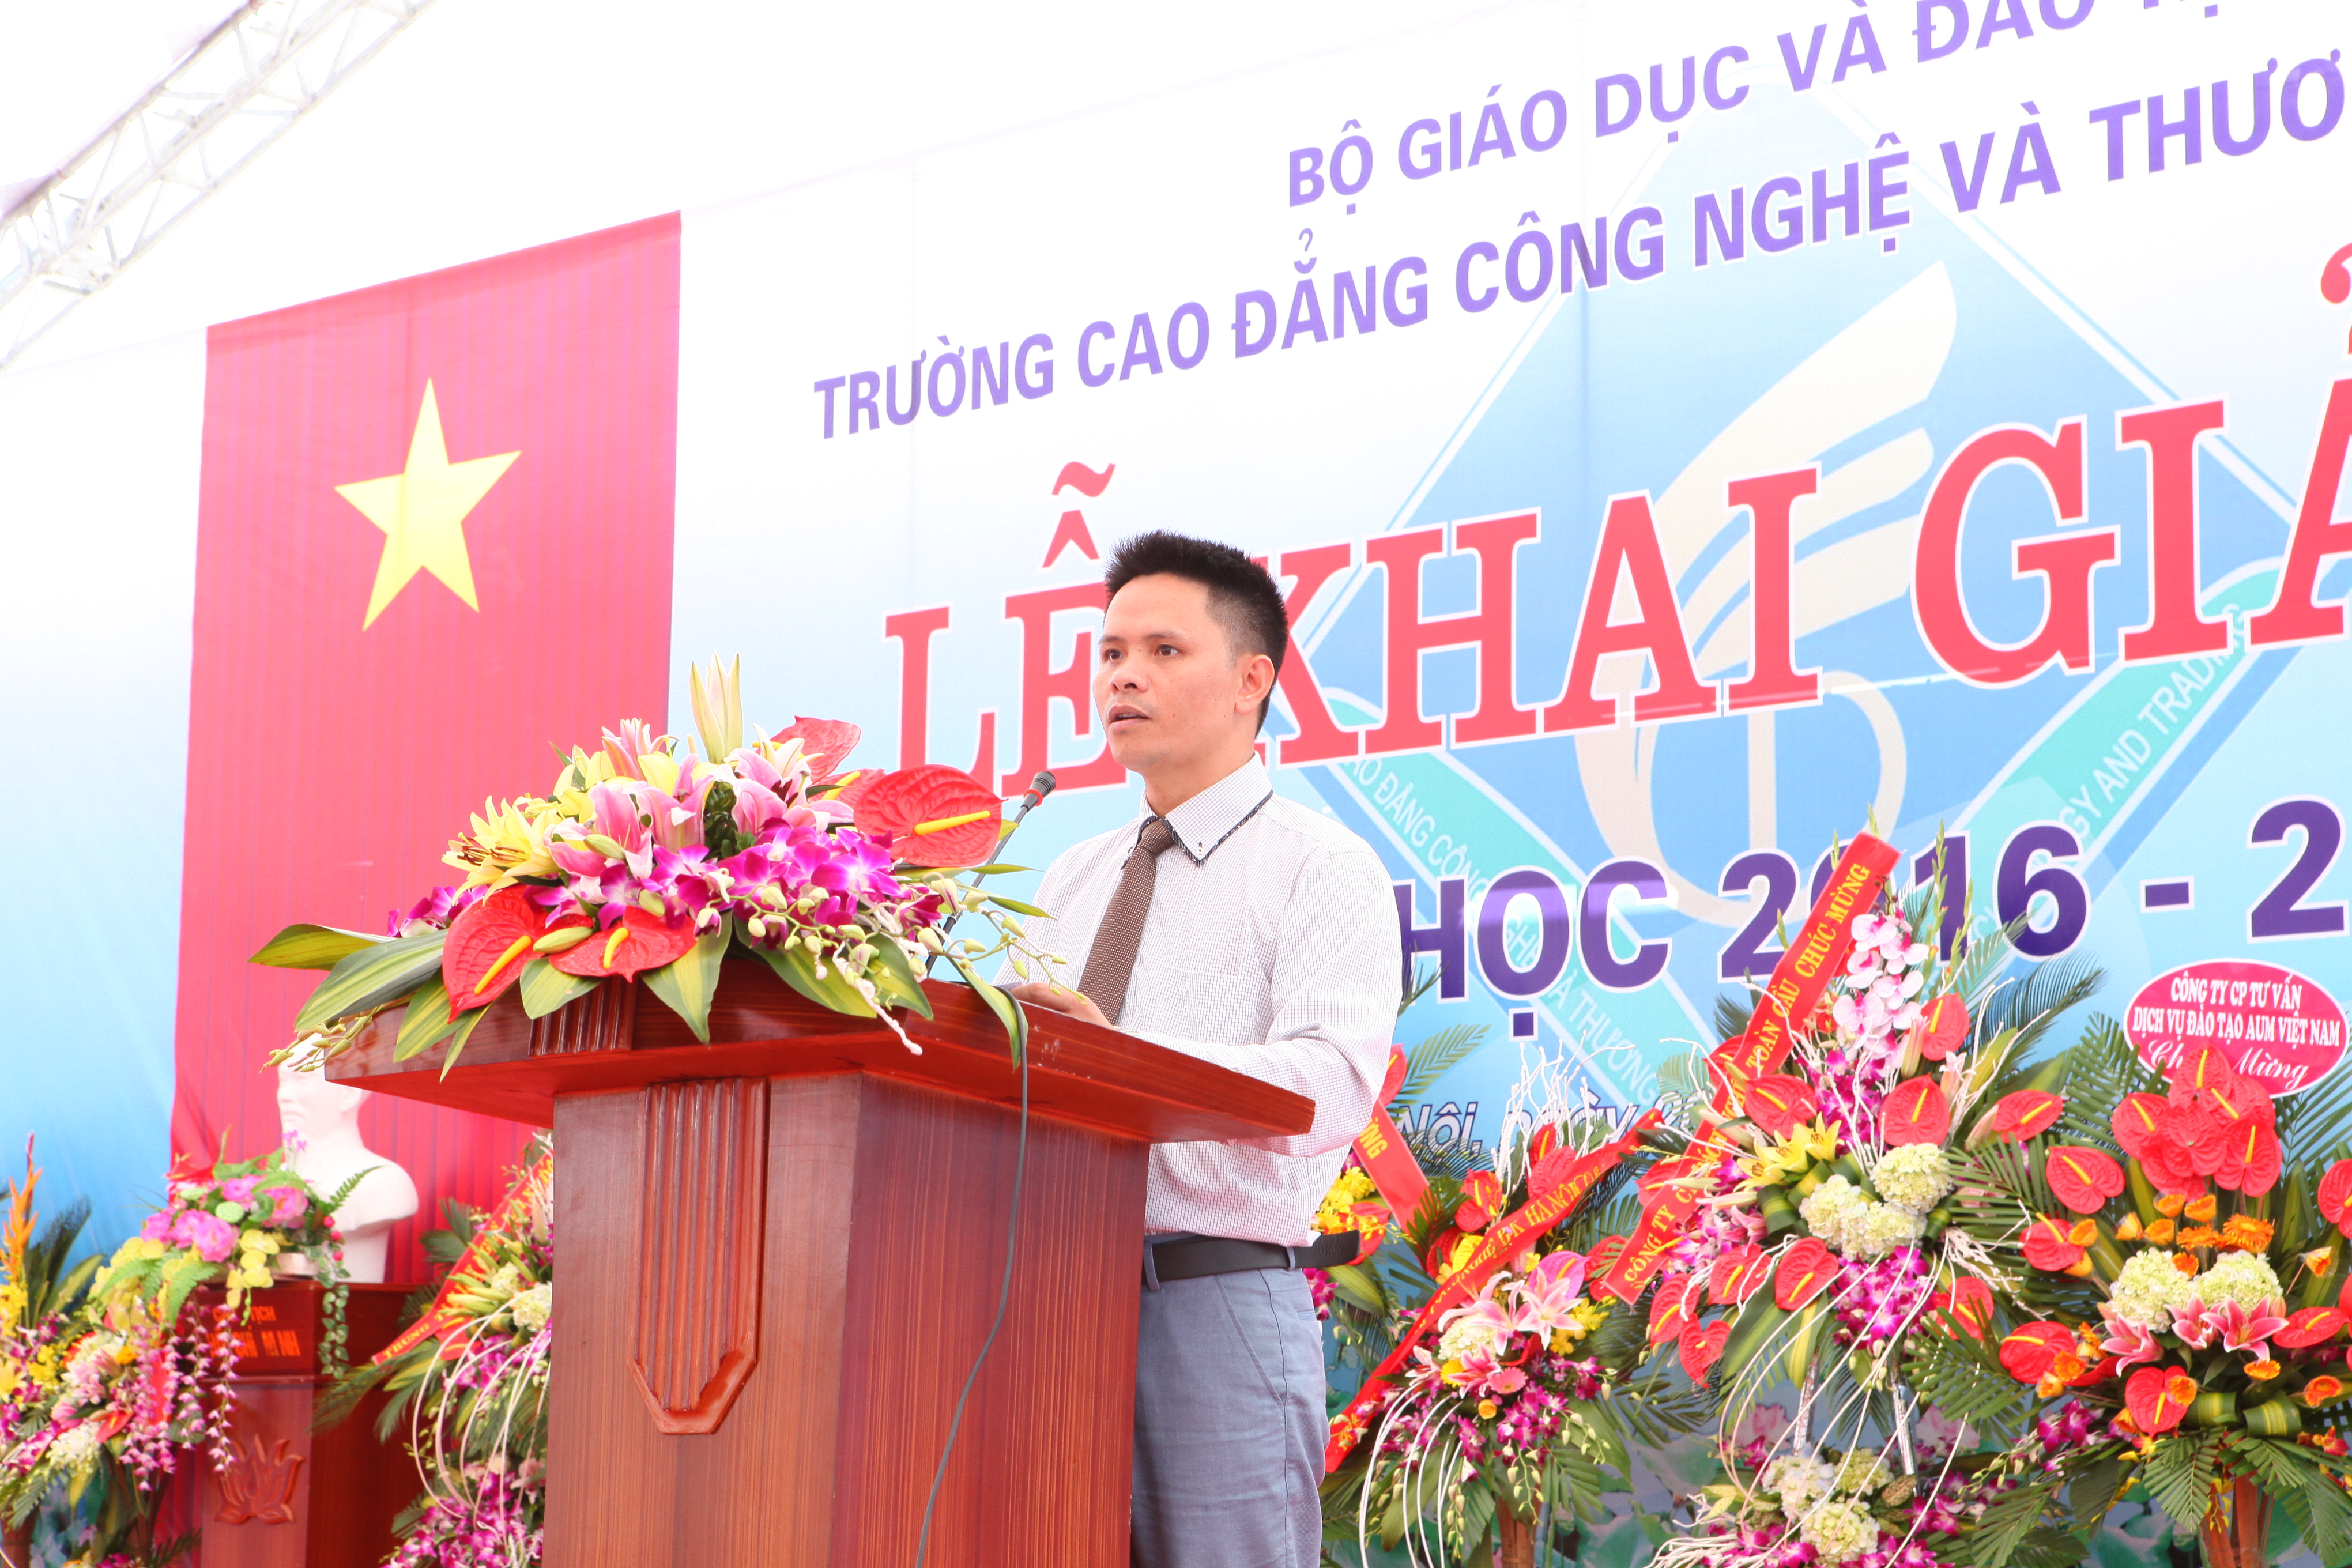 TS. Nguyễn Xuân Sang – Phó Bí thư Đảng ủy, Phó Hiệu trưởng thường trực Nhà trường đọc diễn văn khai giảng năm học 2016 - 2017